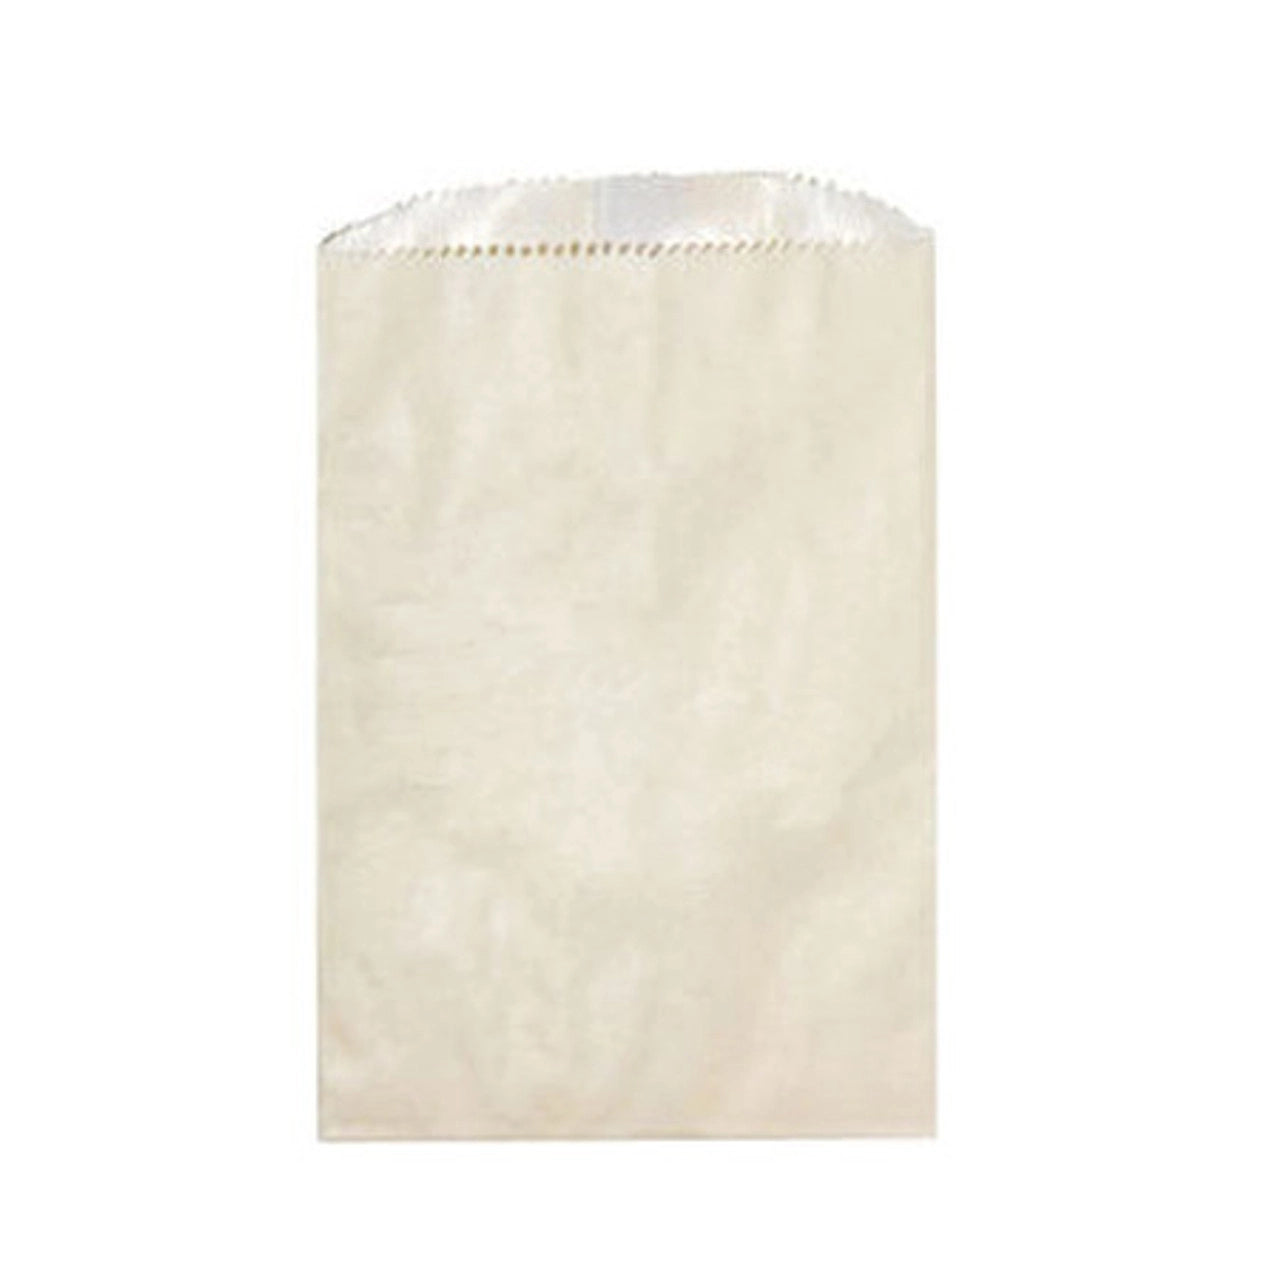 Kraft Paper Upsherin Bag with Leaf Design Label